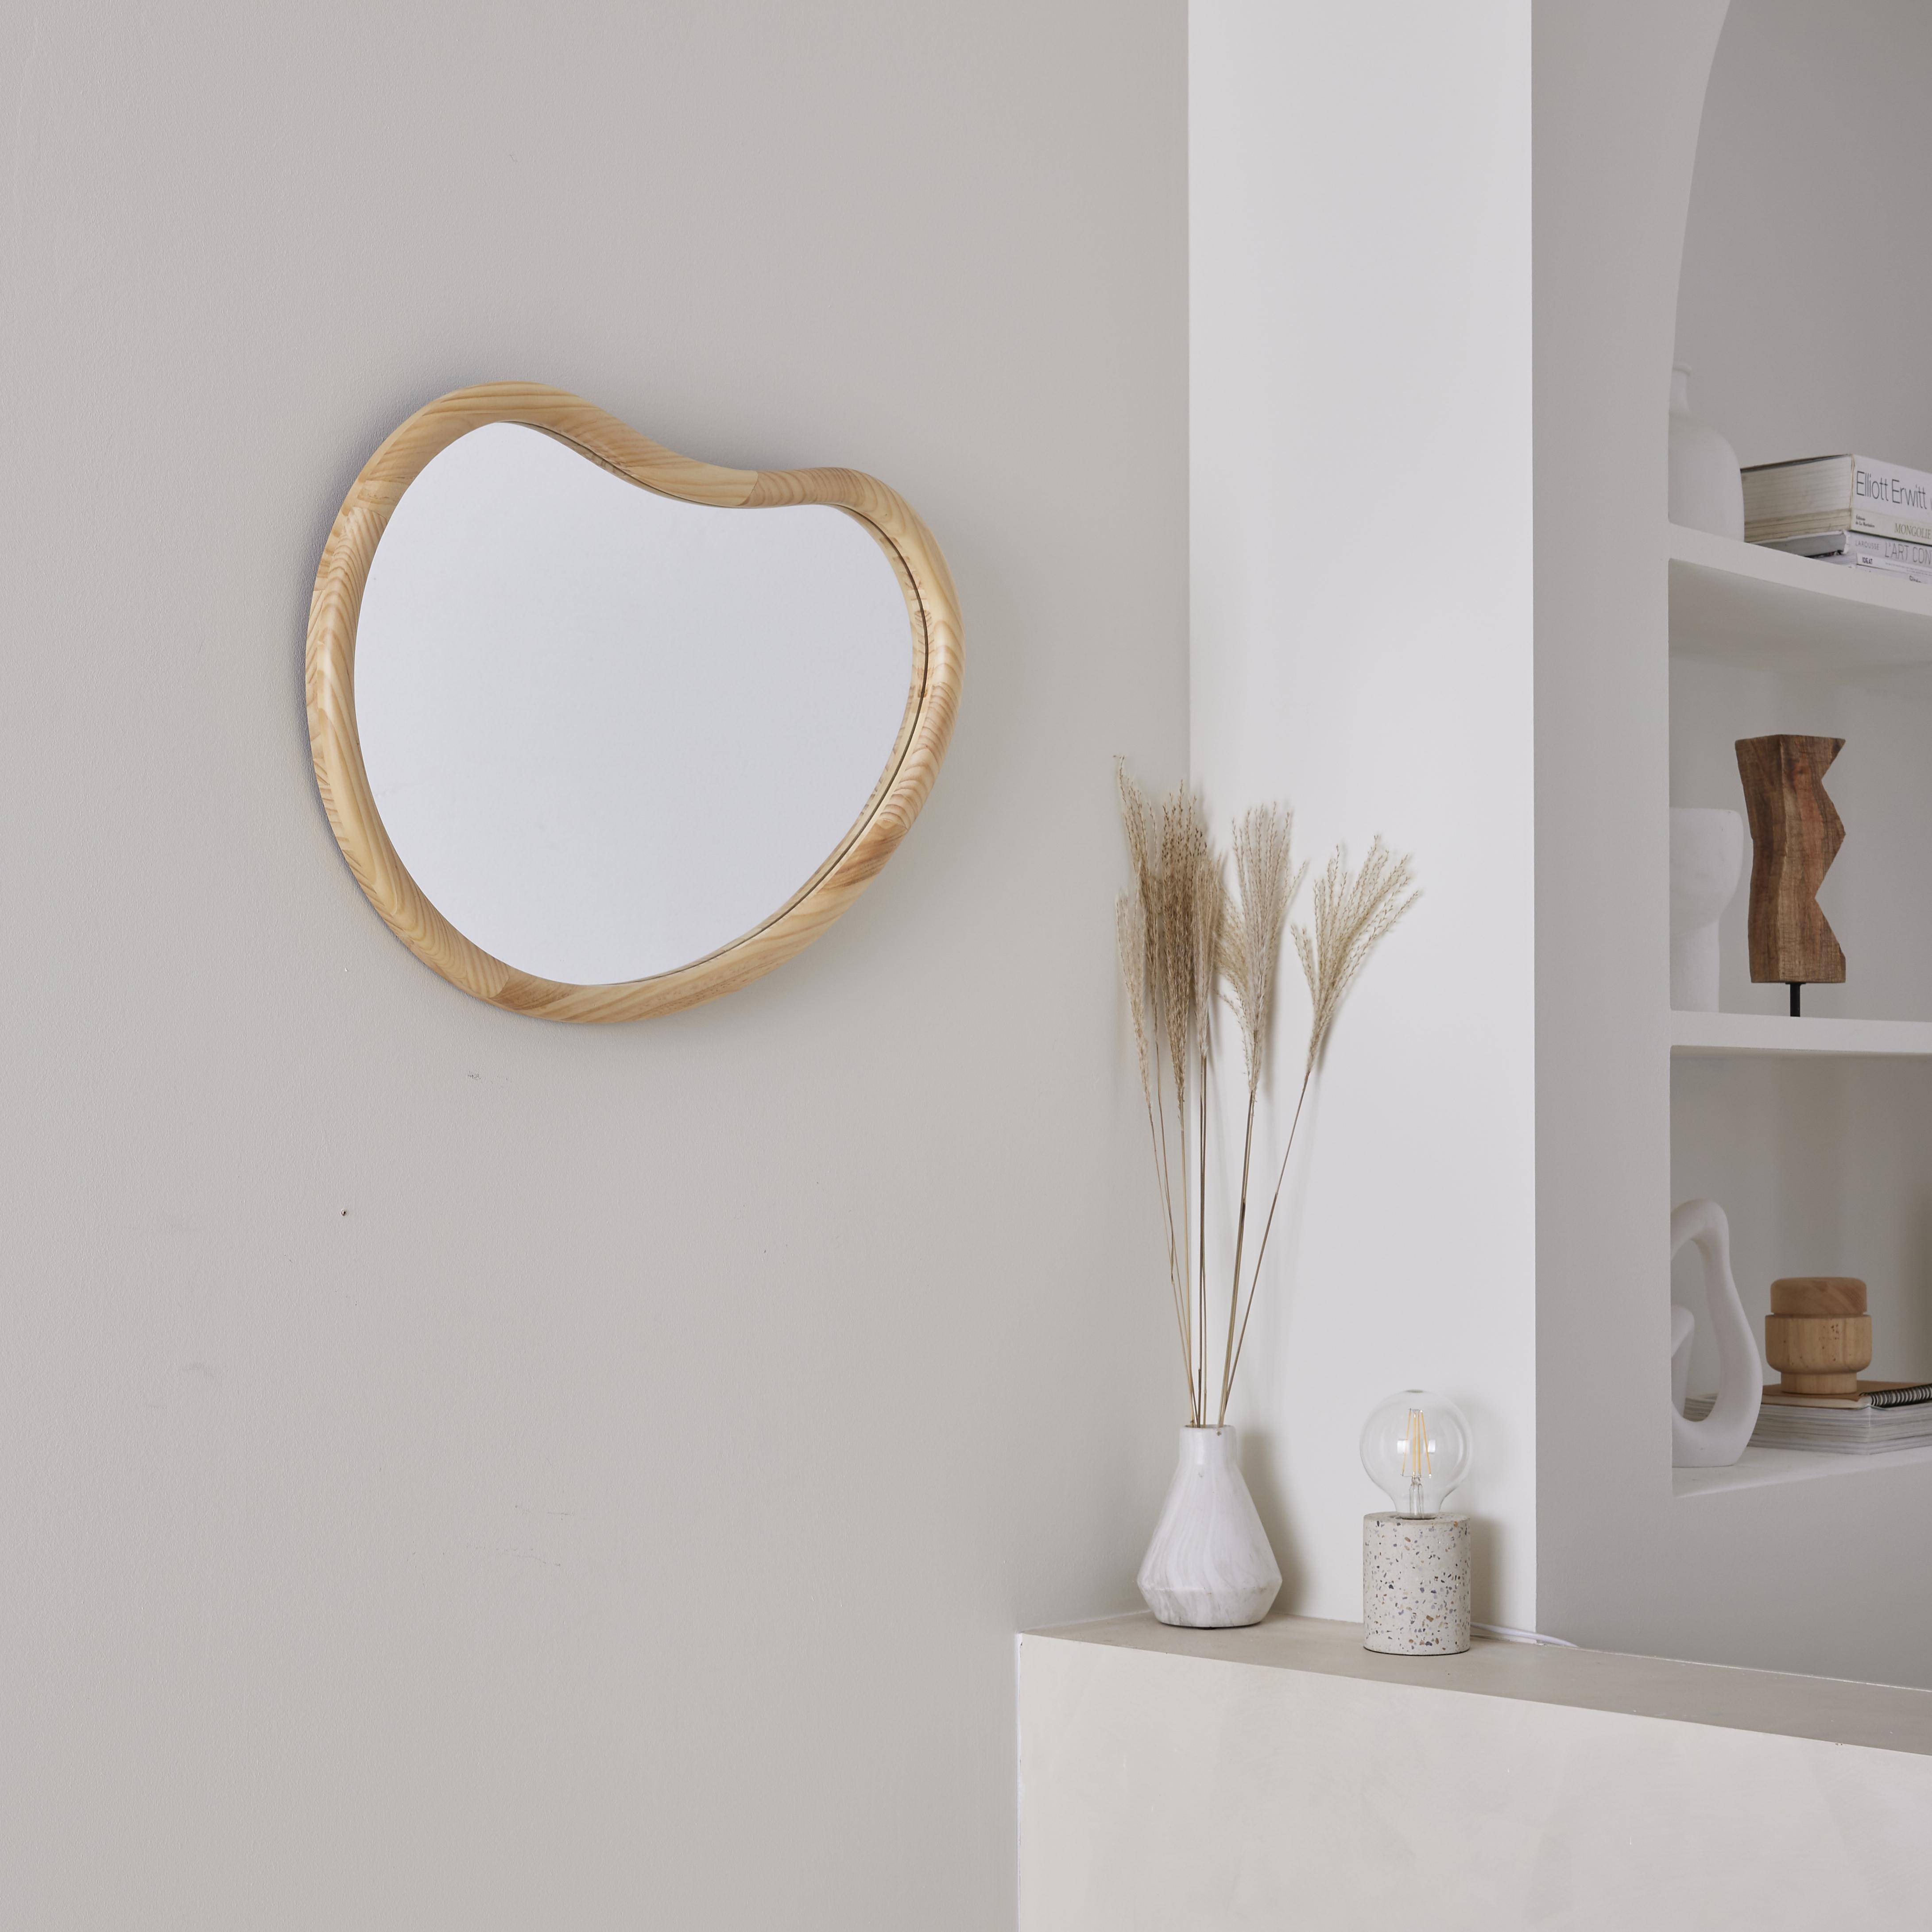 Organischer Spiegel aus Tannenholz 65cm 3cm dick naturfarben ideal für Eingang, Schlafzimmer oder Bad Photo2